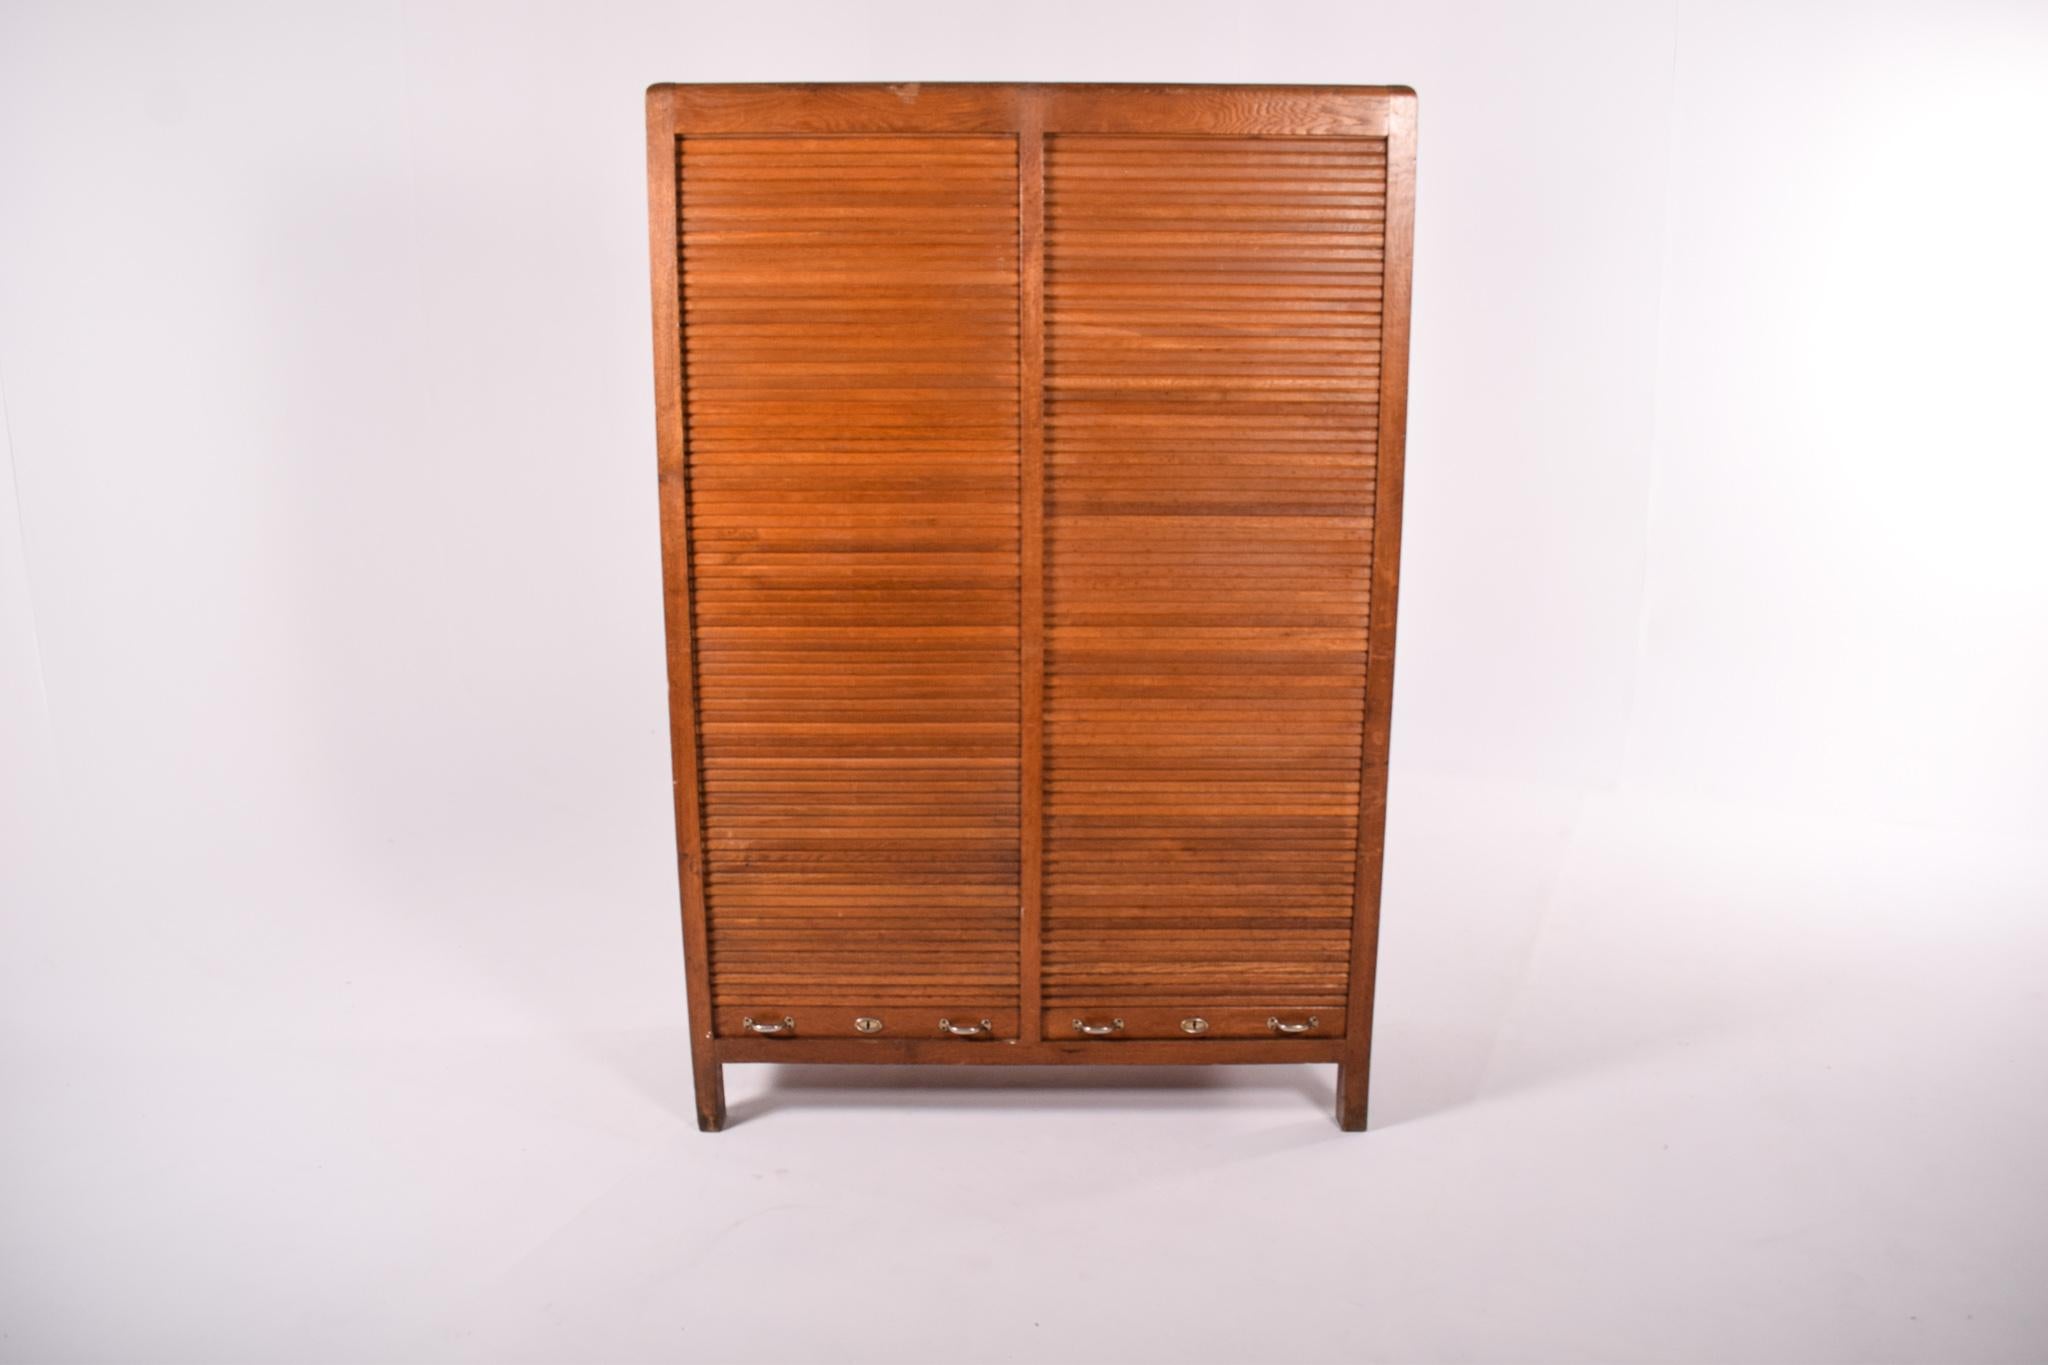 Ce meuble vintage en chêne des années 1950 est une pièce de mobilier classique du milieu du siècle avec une touche portugaise distincte, fabriquée par la société réputée Olaio. Le design de l'armoire est à la fois élégant et pratique, avec une